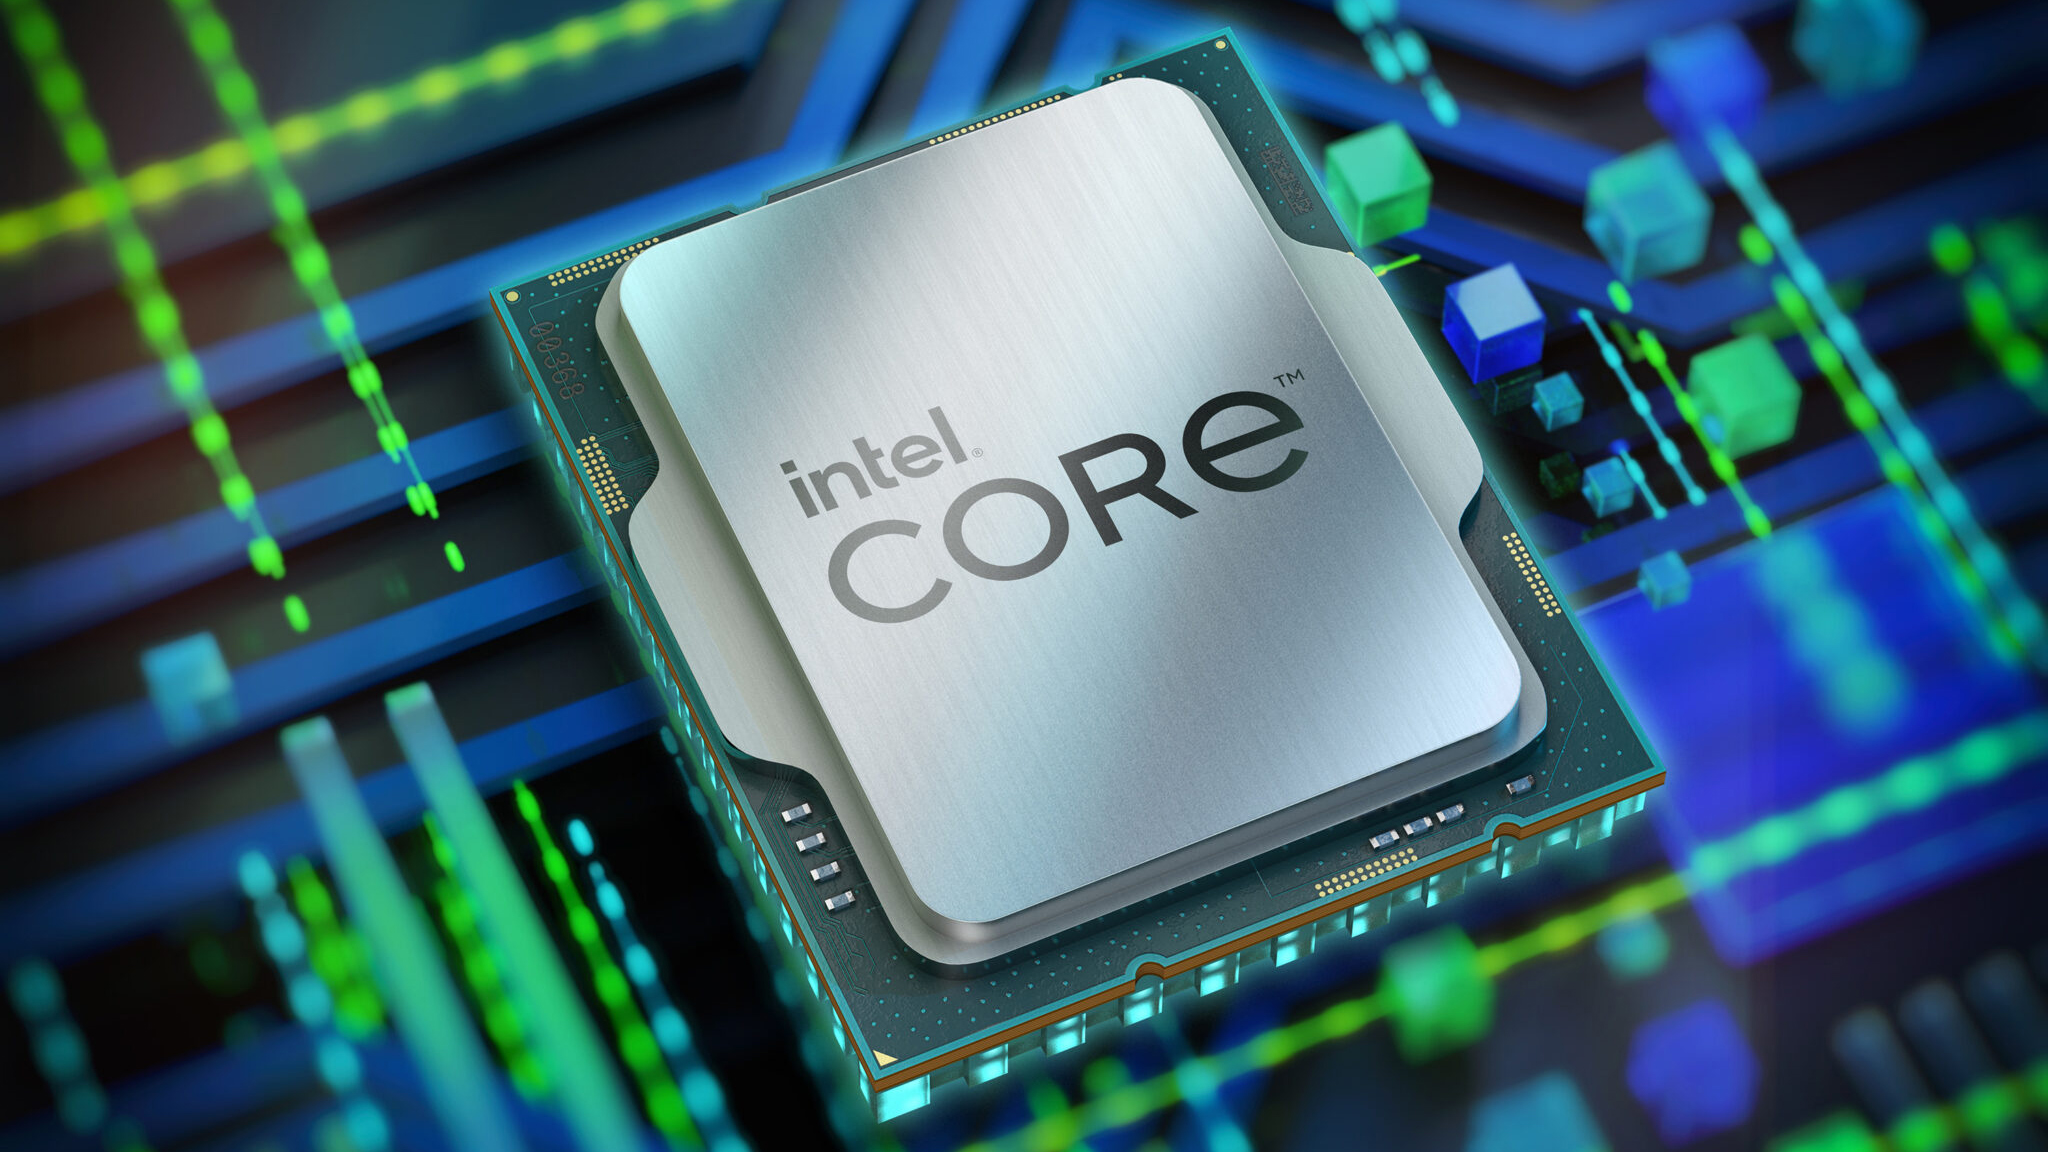  Lõi Raptor Cove của CPU Intel thế hệ 13 xuất hiện với hiệu xuất đang mơ ước